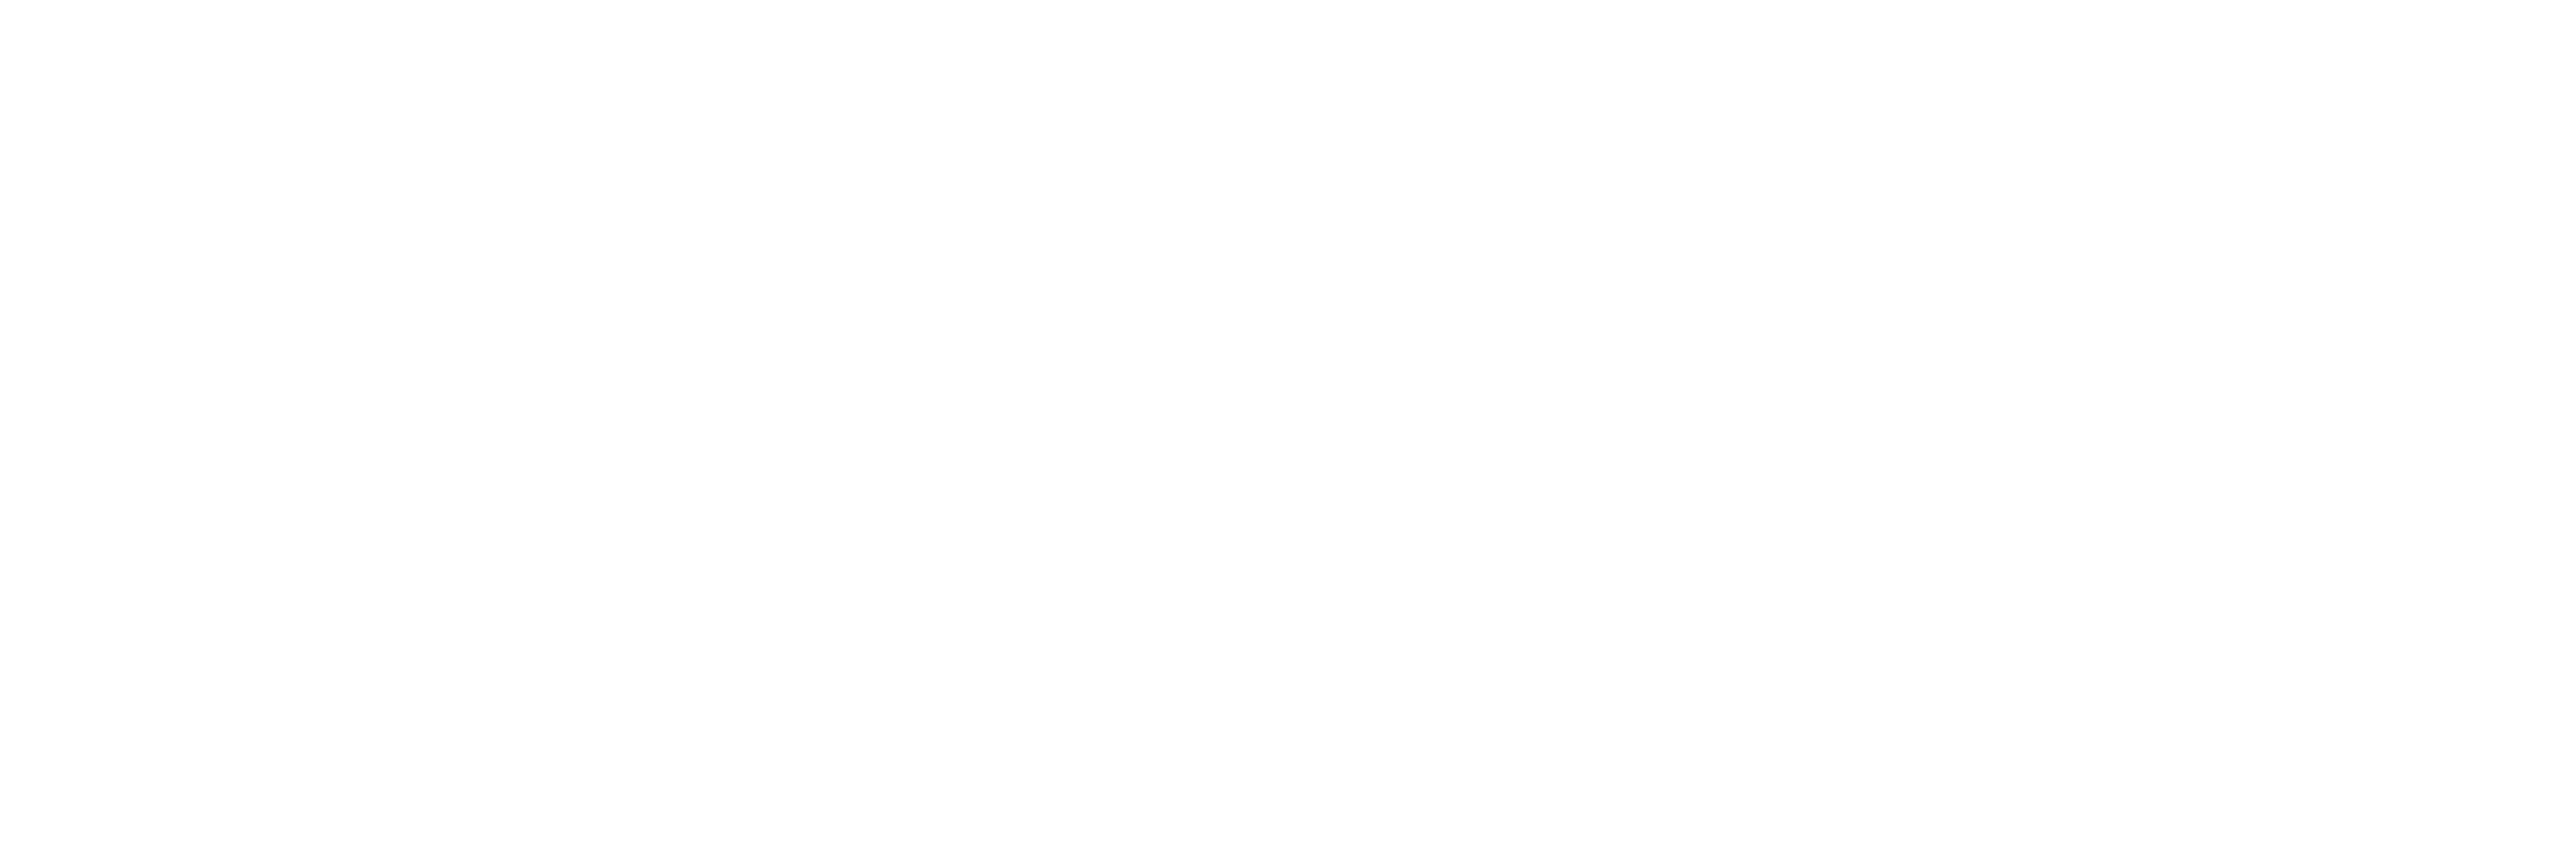 Logotipo Orbidental Blanco